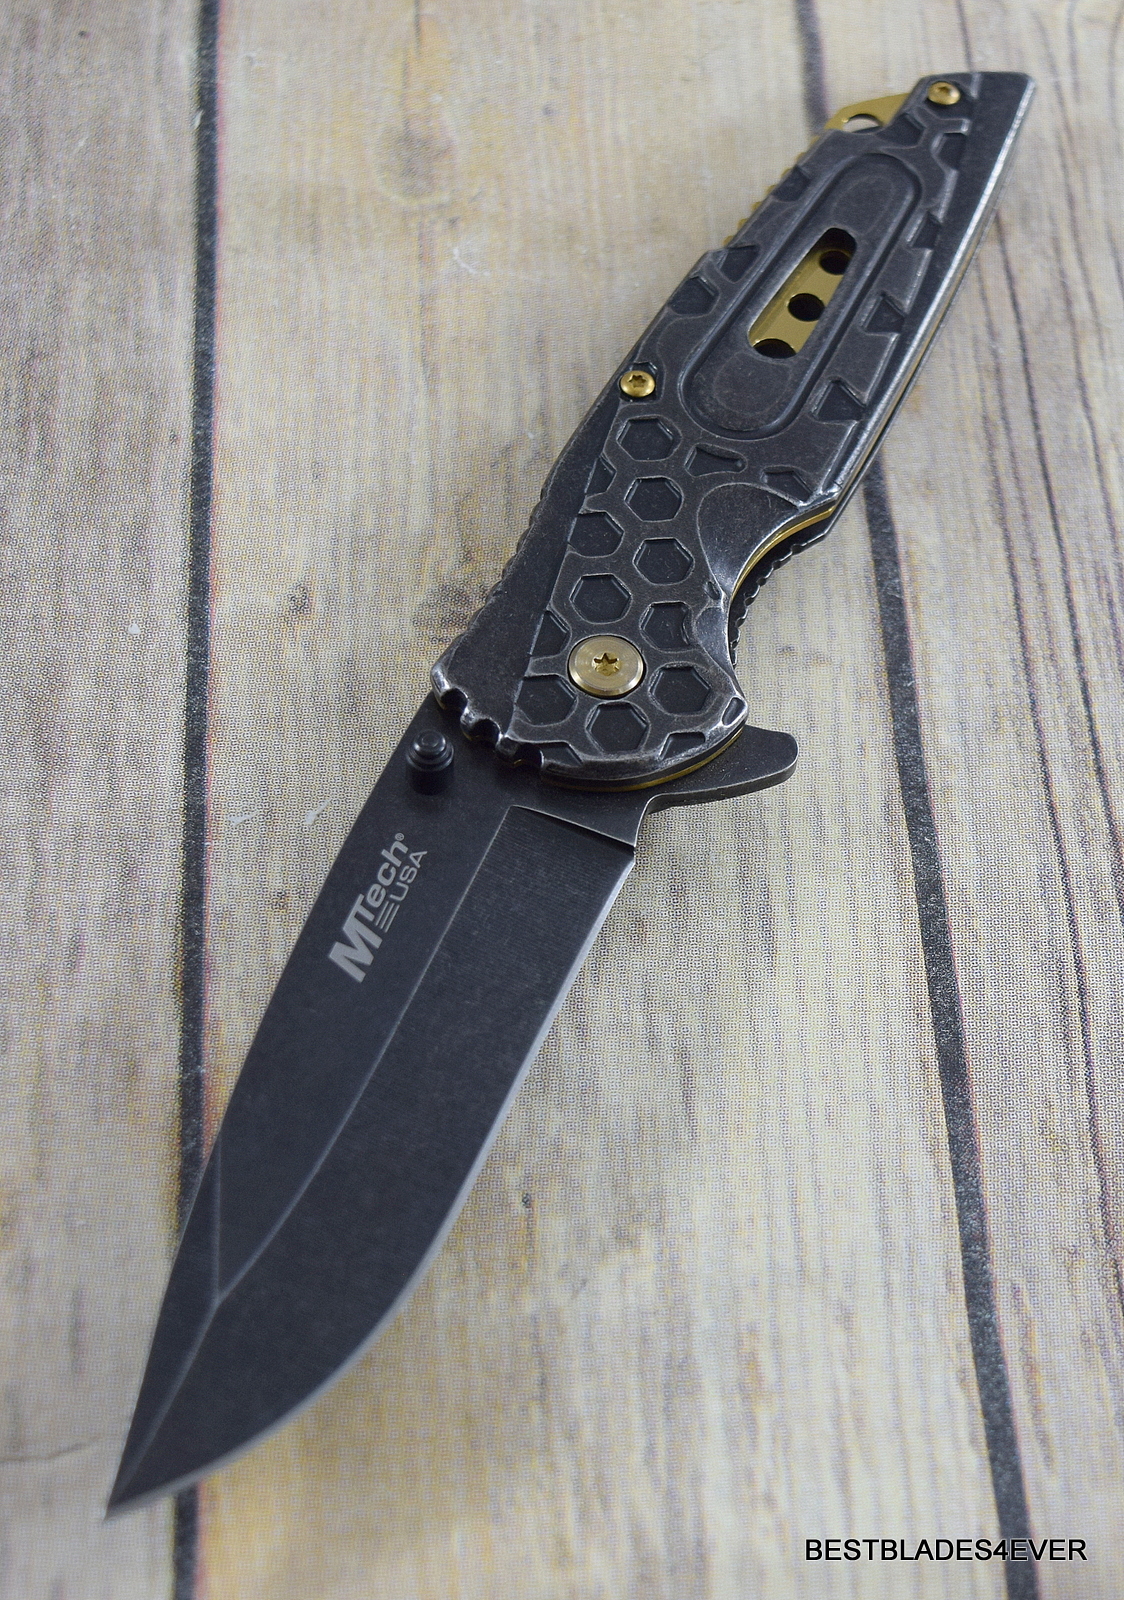 8.25" MTECH SPRING ASSISTED POCKET KNIFE WITH POCKET CLIP RAZOR SHARP BLADE